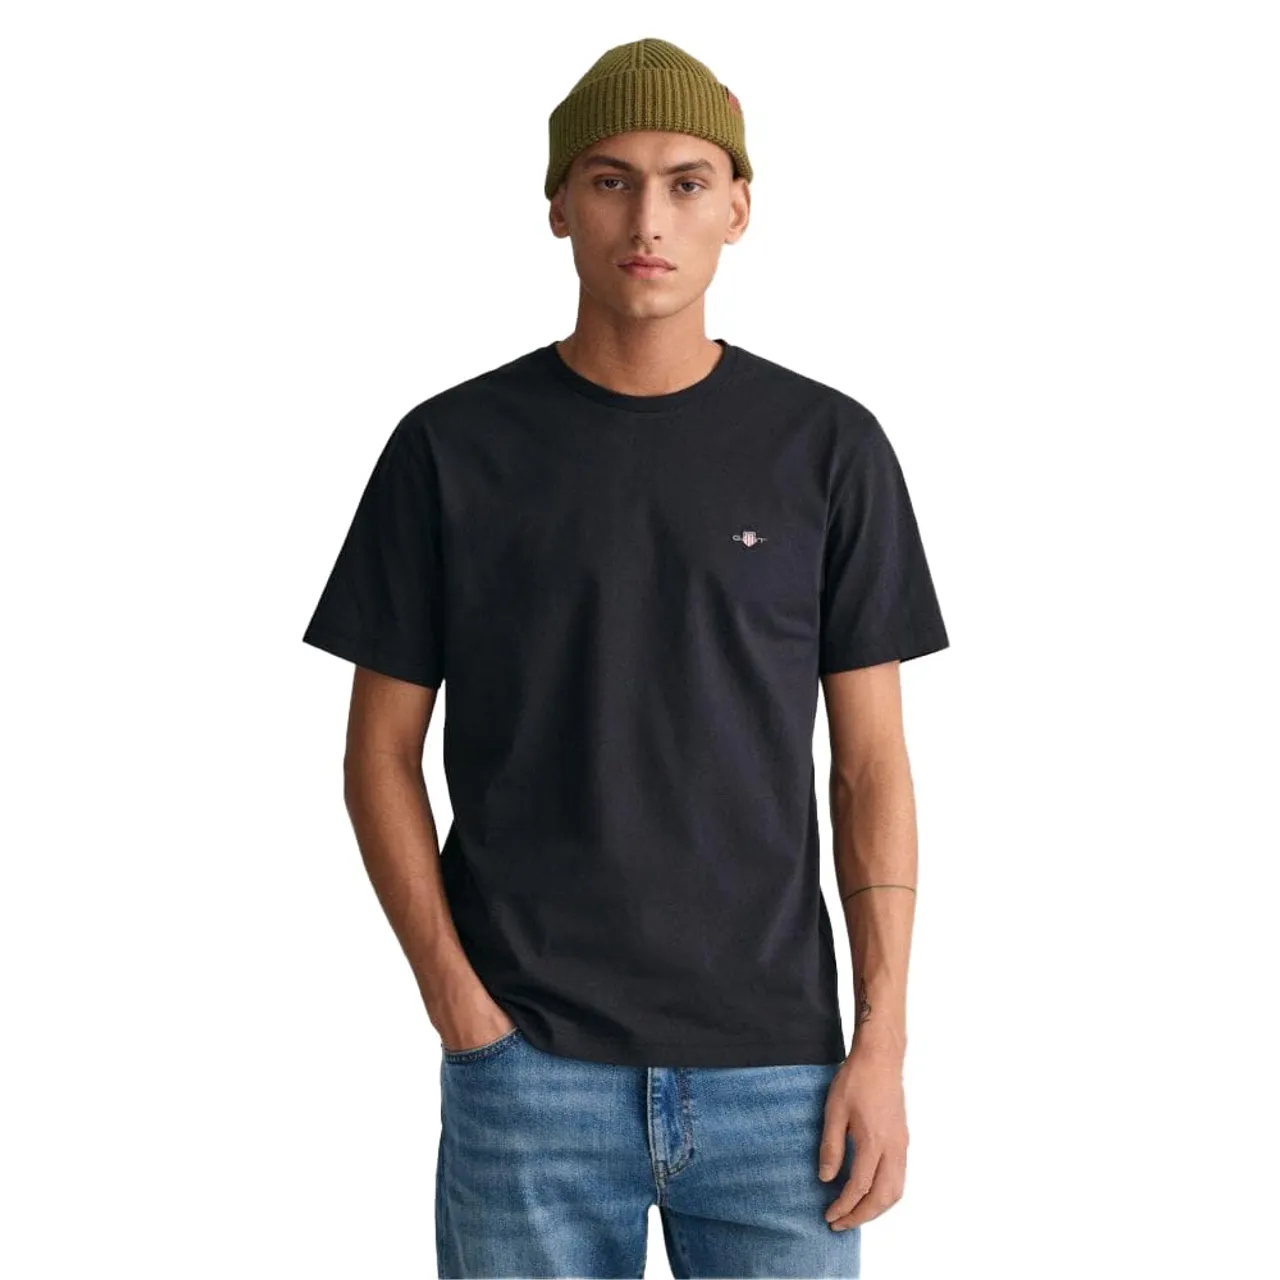 GANT Mens Shield Short Sleeve T-Shirt - Black 005